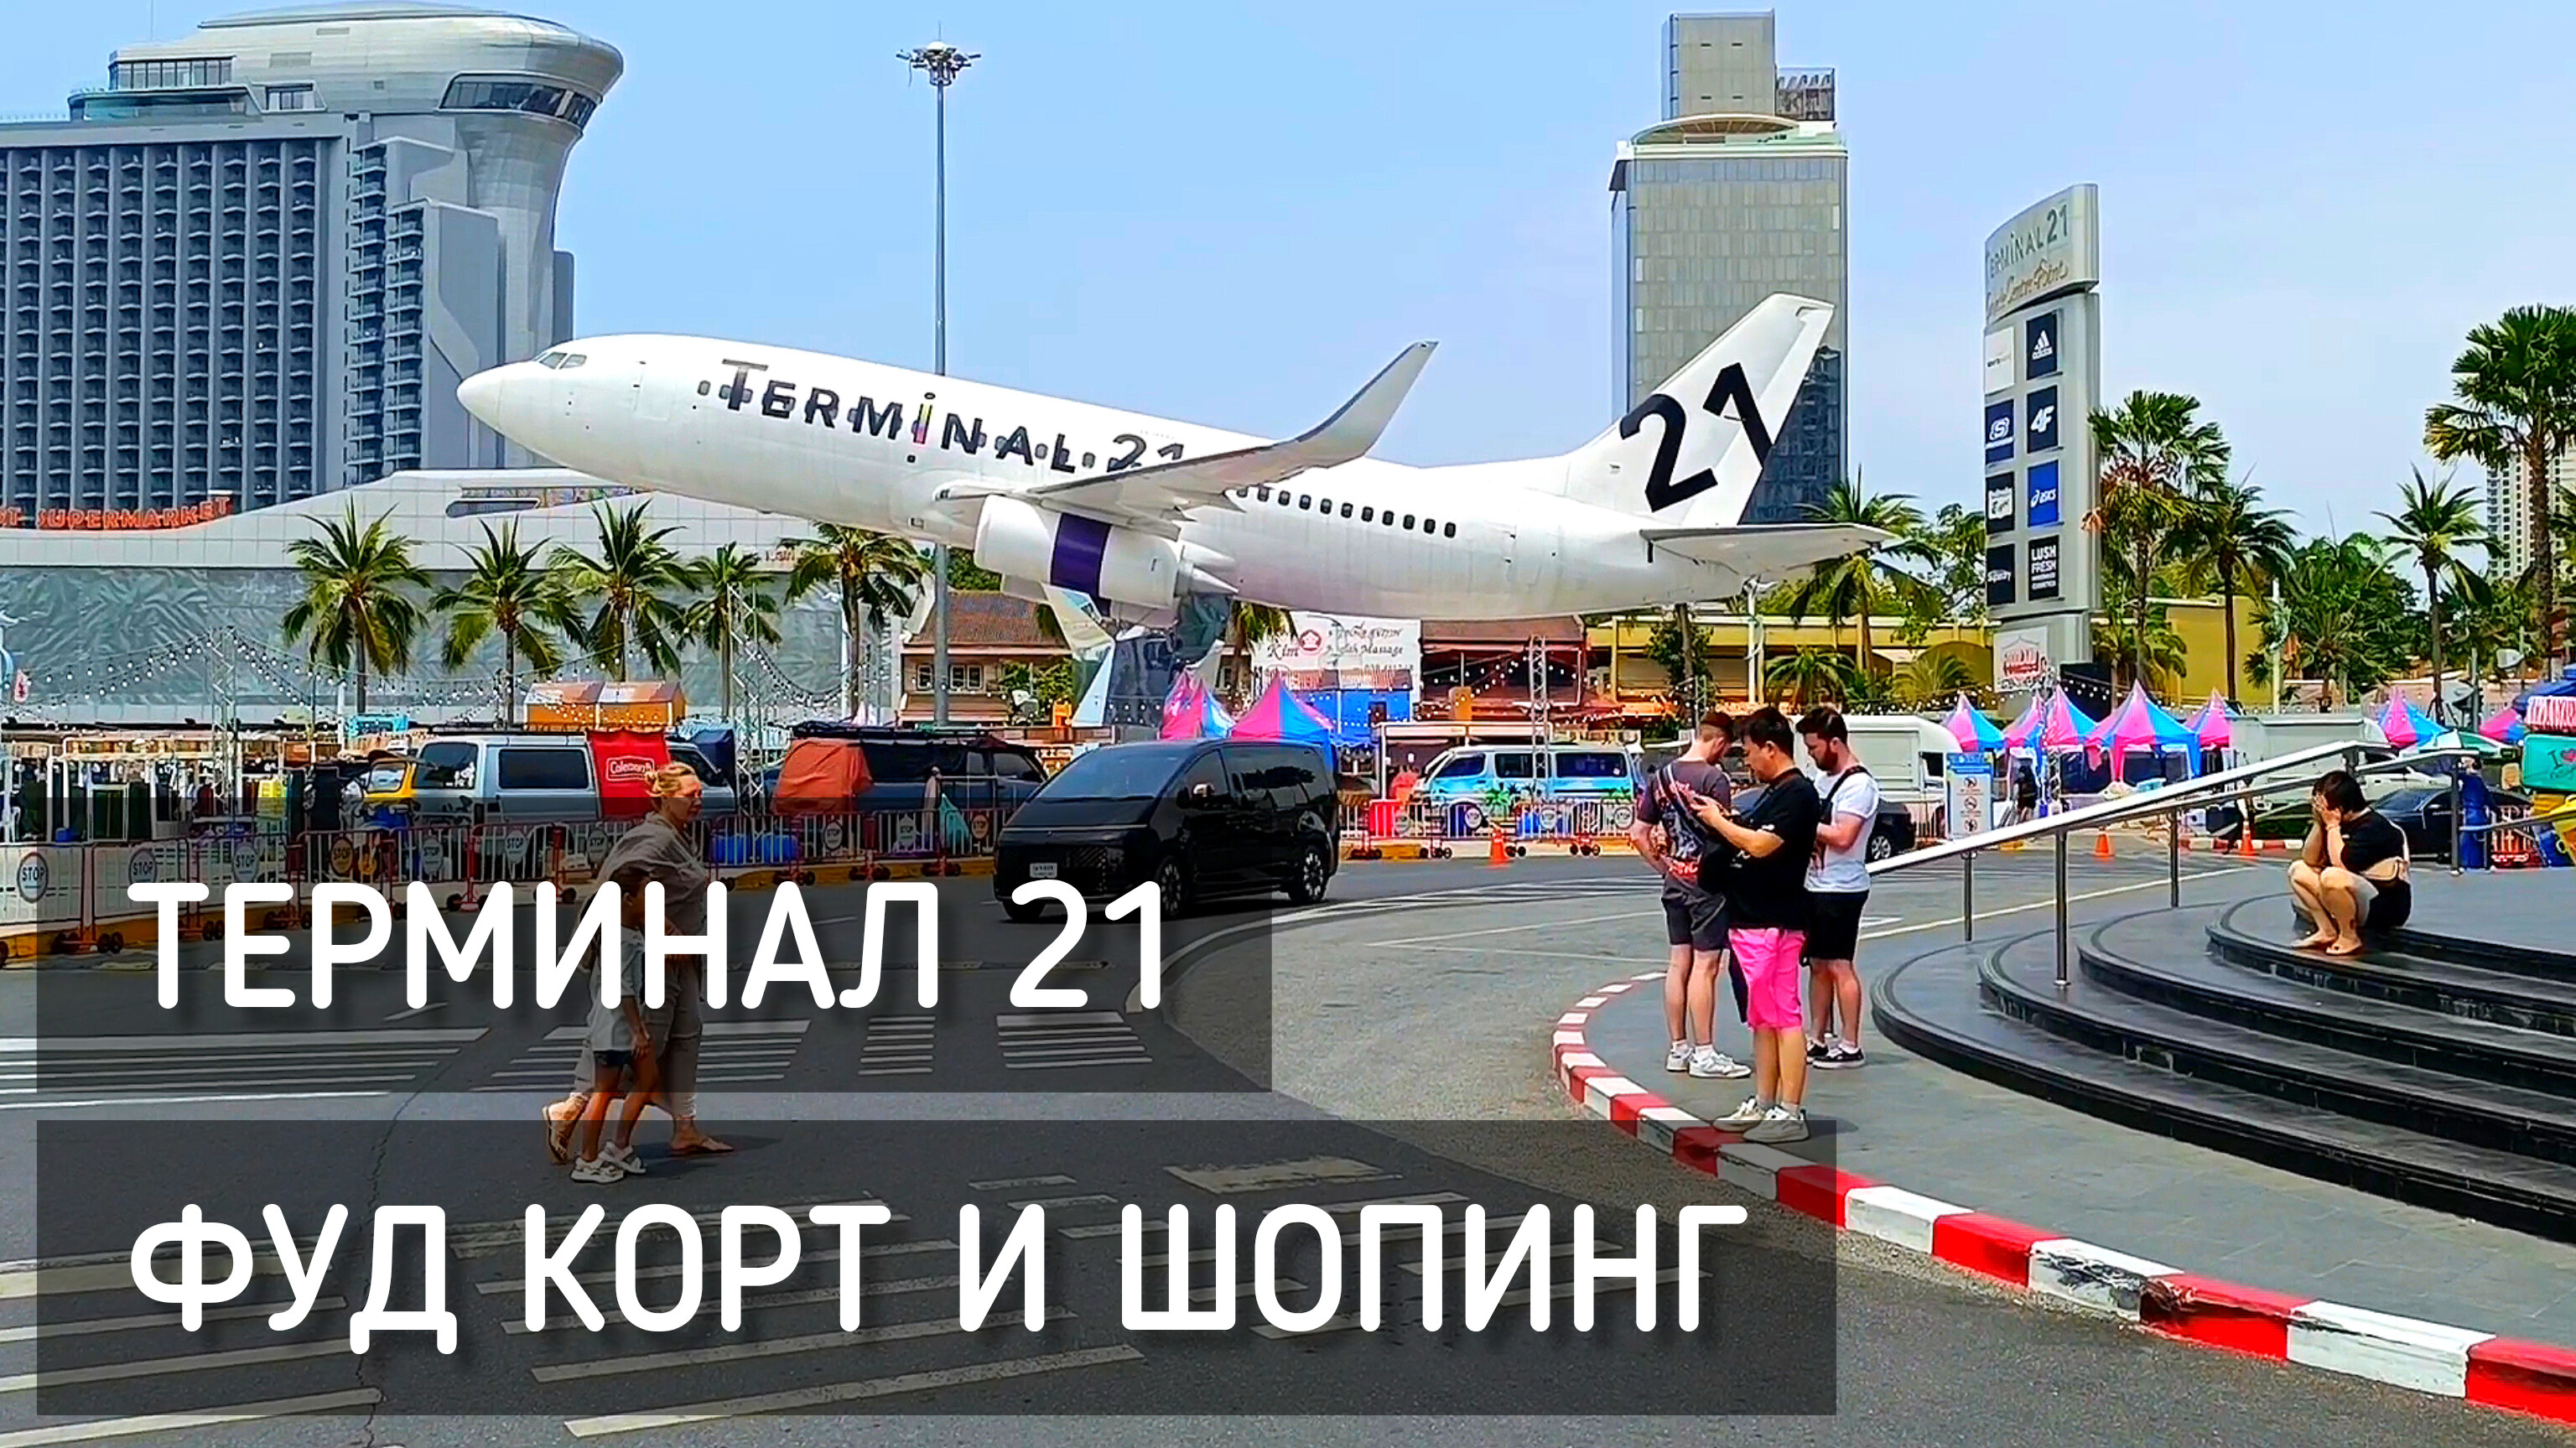 Терминал 21 Паттайя. Фуд корт. Таиланд 2024 / Terminal 21 Pattaya #таиланд #терминал21 #фудкорт